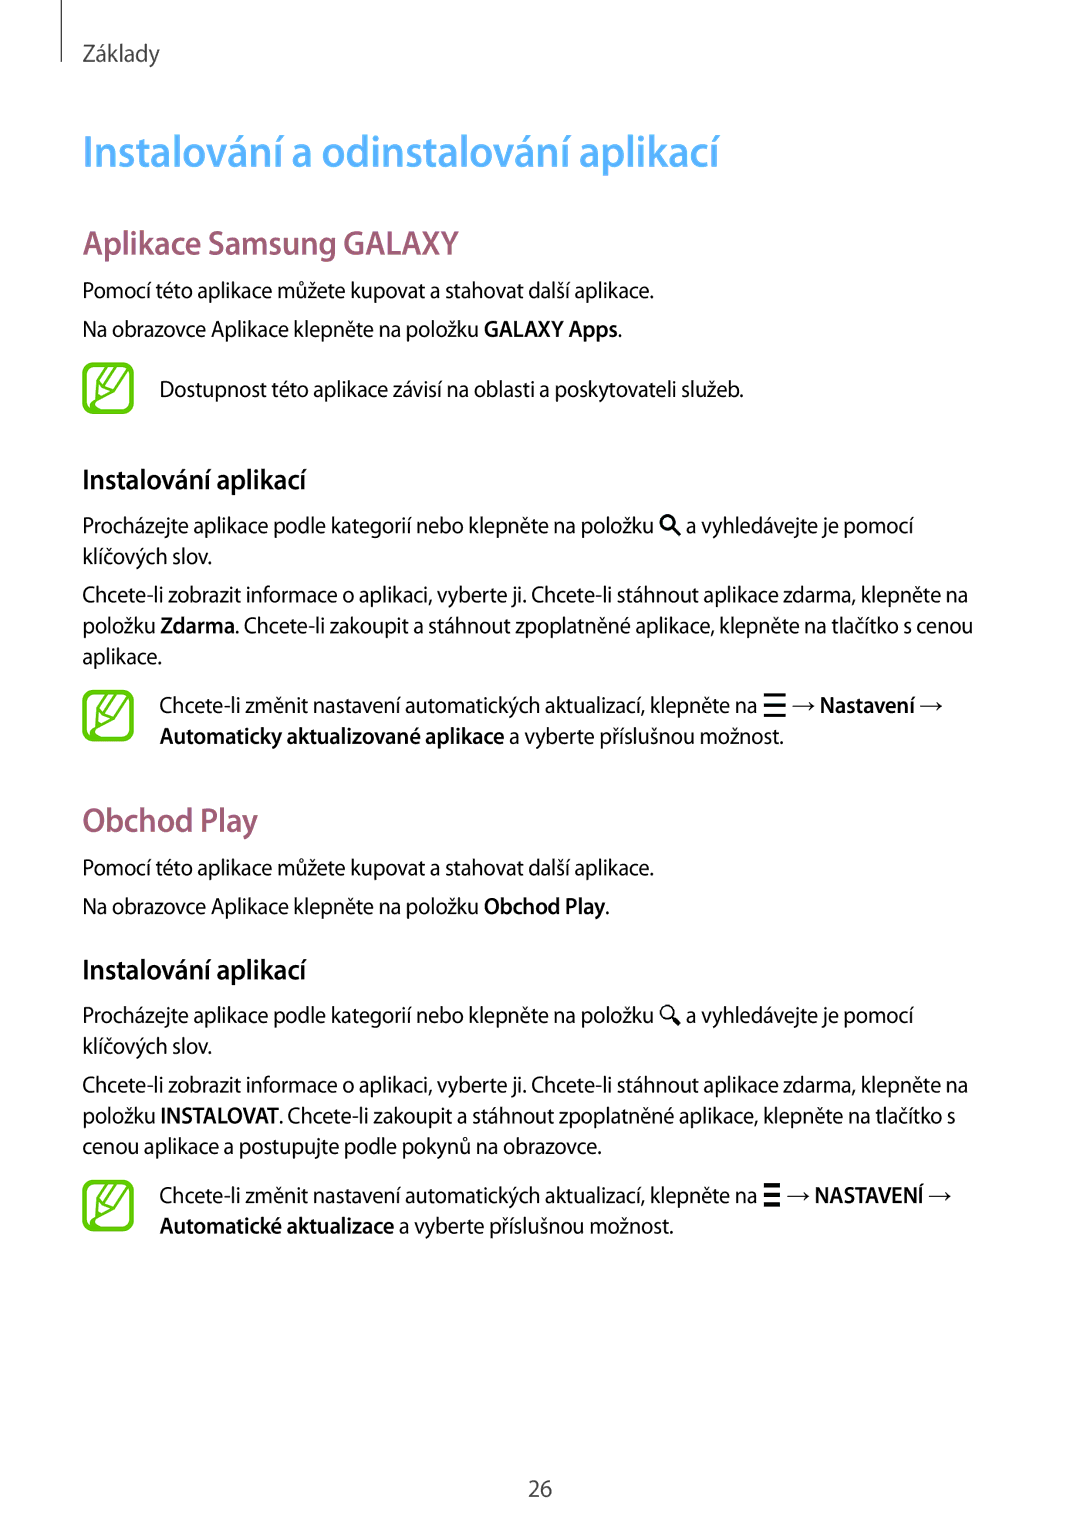 Samsung SM2G360FZWAVDH Instalování a odinstalování aplikací, Aplikace Samsung Galaxy, Obchod Play, Instalování aplikací 